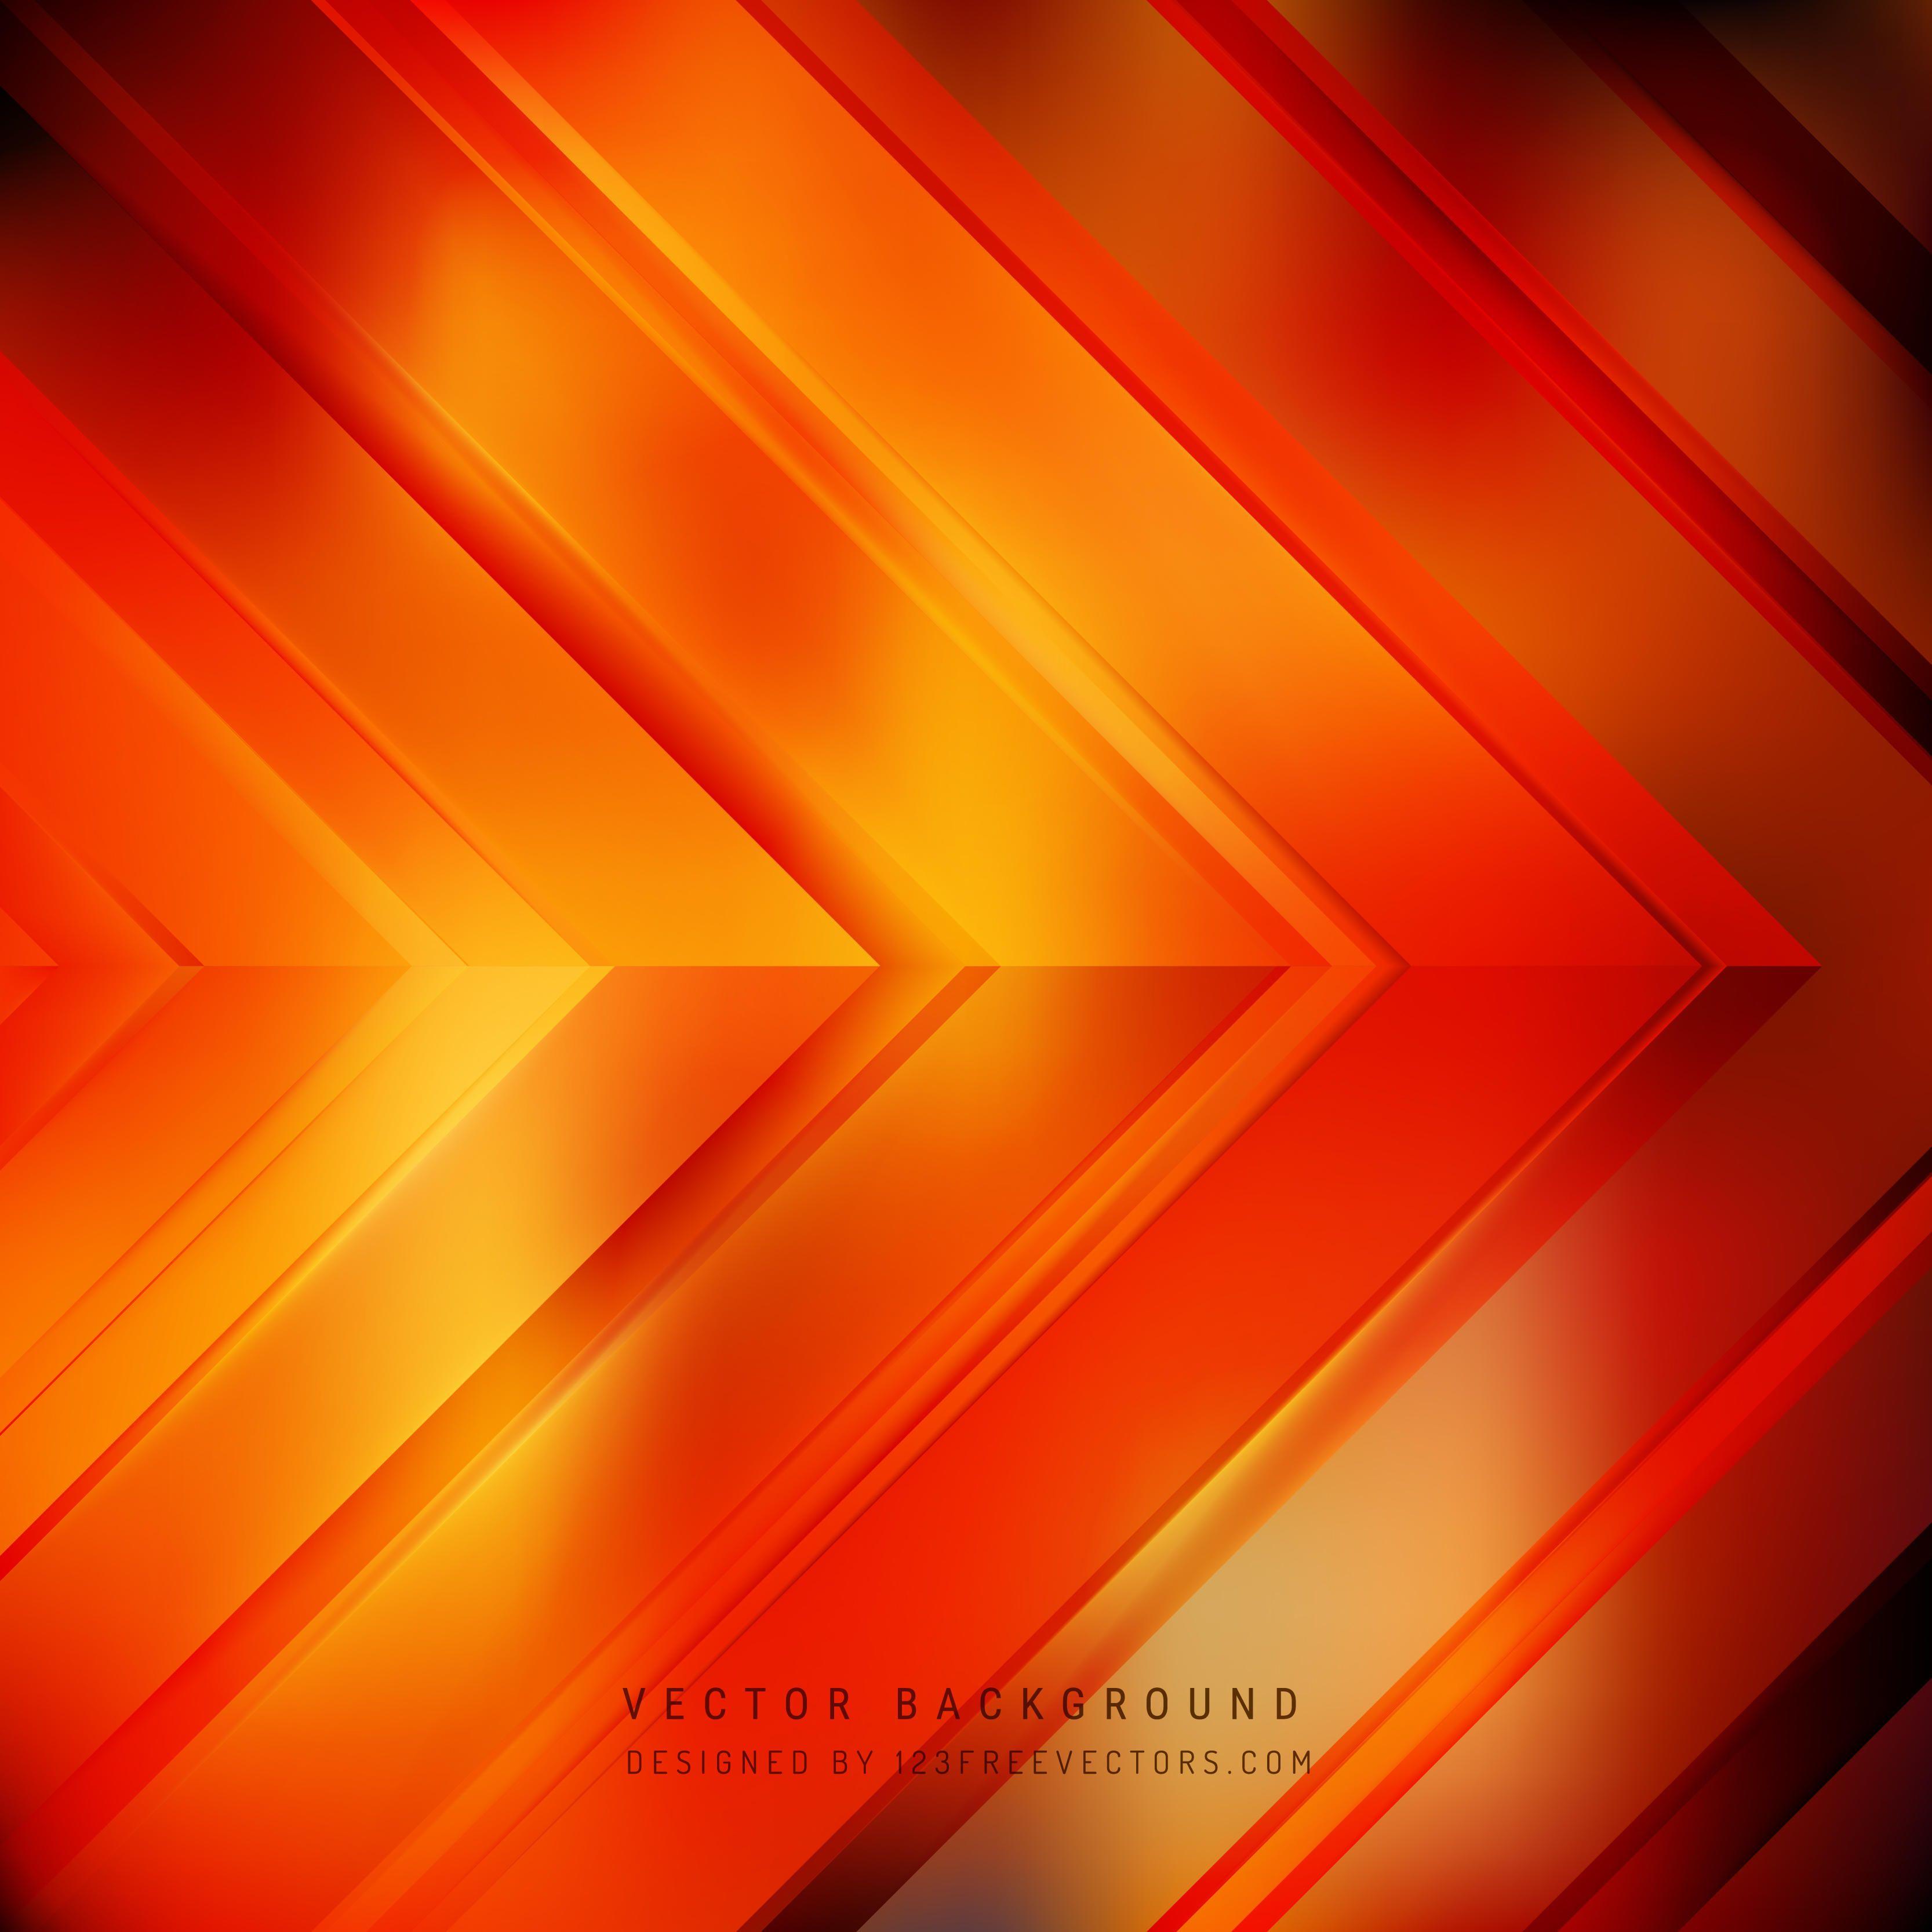 Cool Orange Arrow Background DesignFreevectors